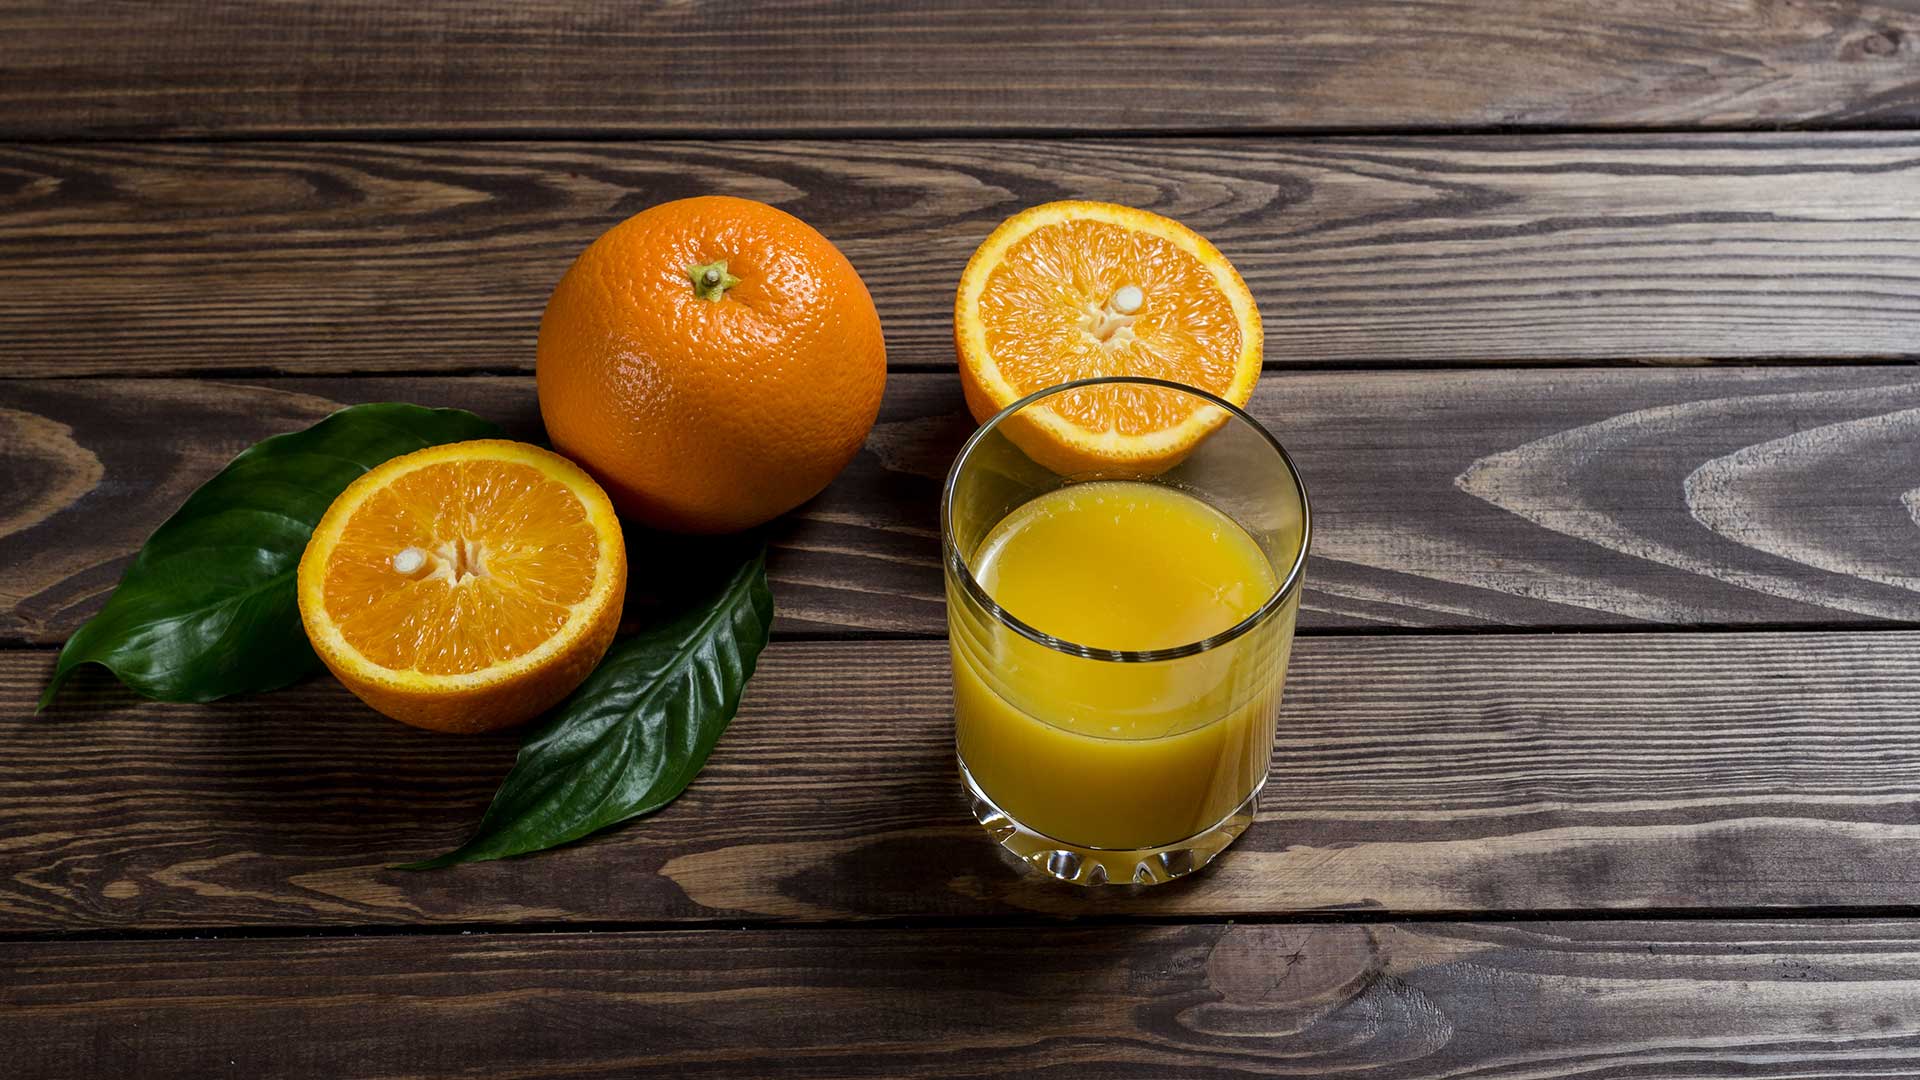 JDC - Glass of orange juice beside sliced orange fruit